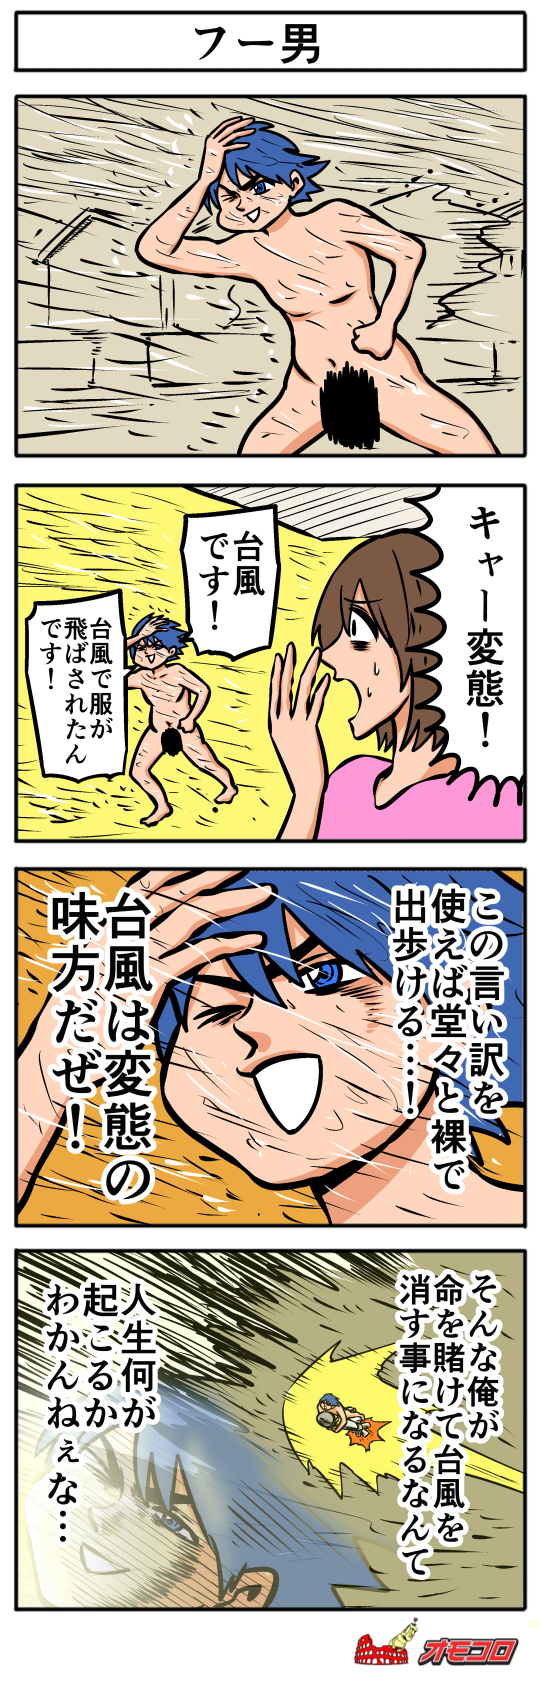 【4コマ漫画】フー男